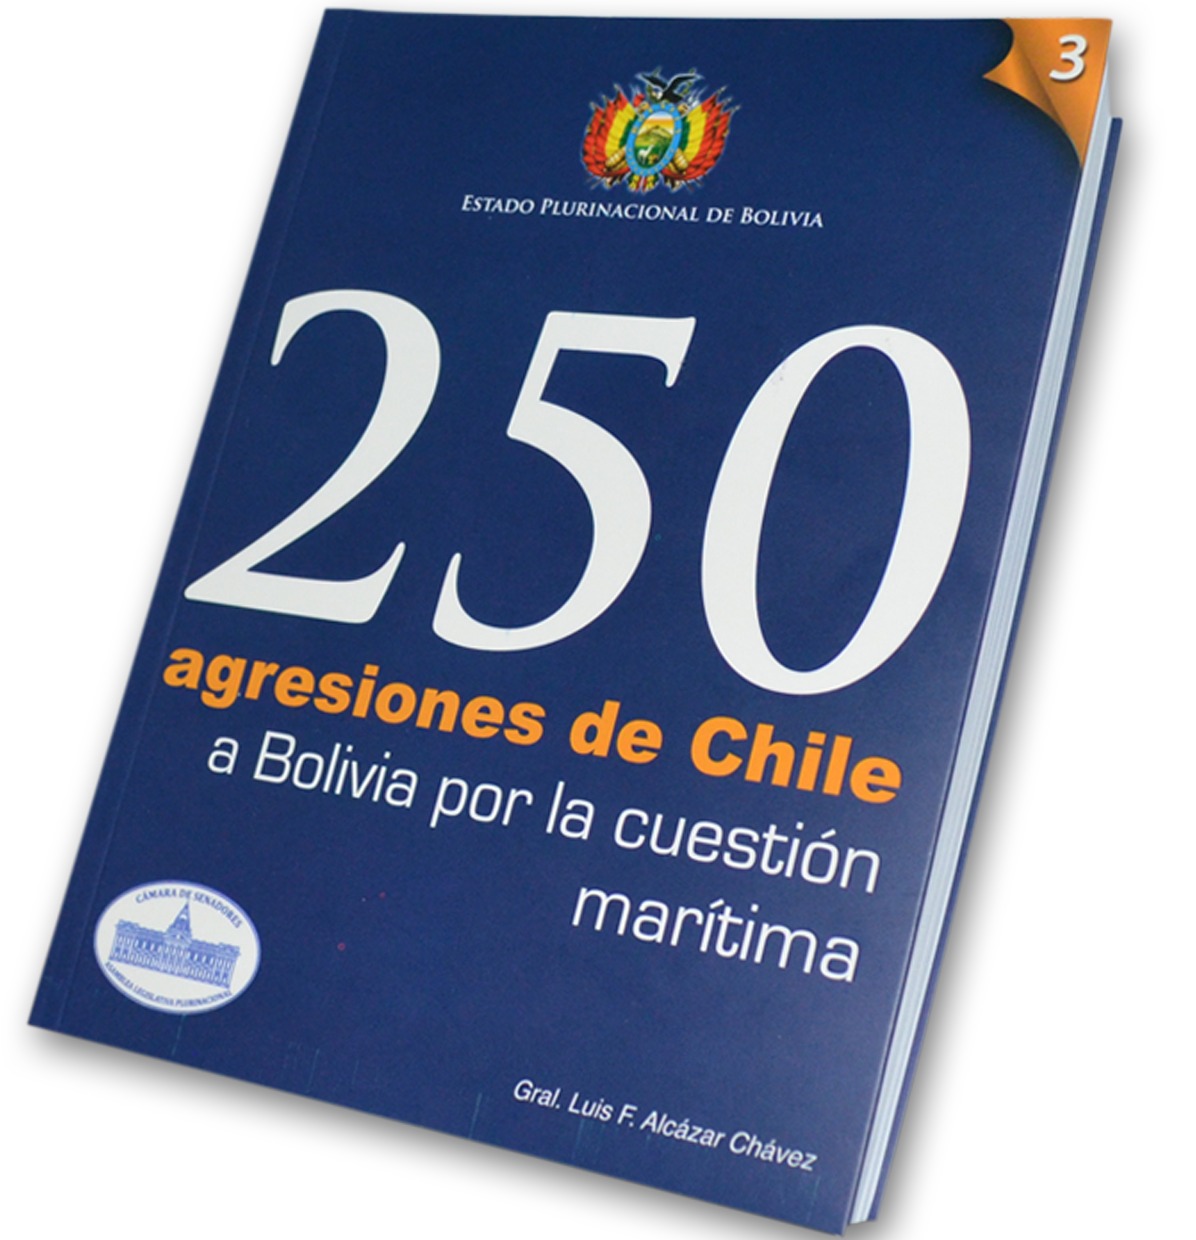 Oficializan que libro “250 agresiones de Chile a Bolivia” será incluido en currículo educativo